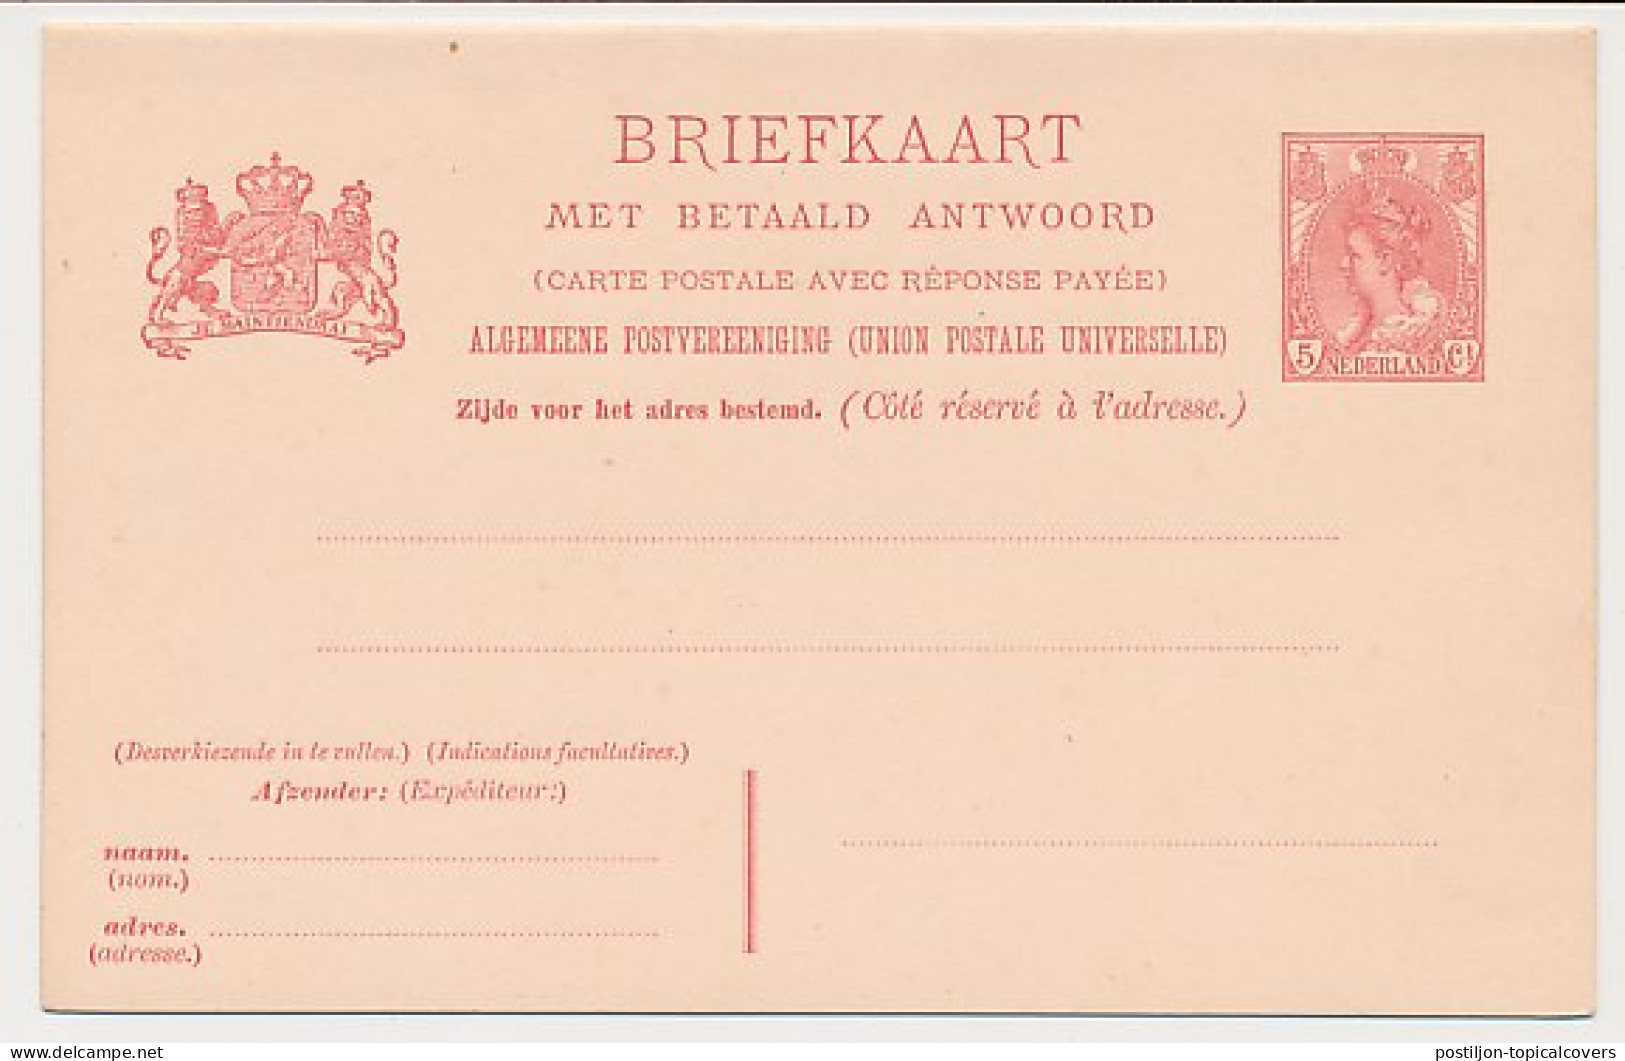 Briefkaart G. 62 - Entiers Postaux